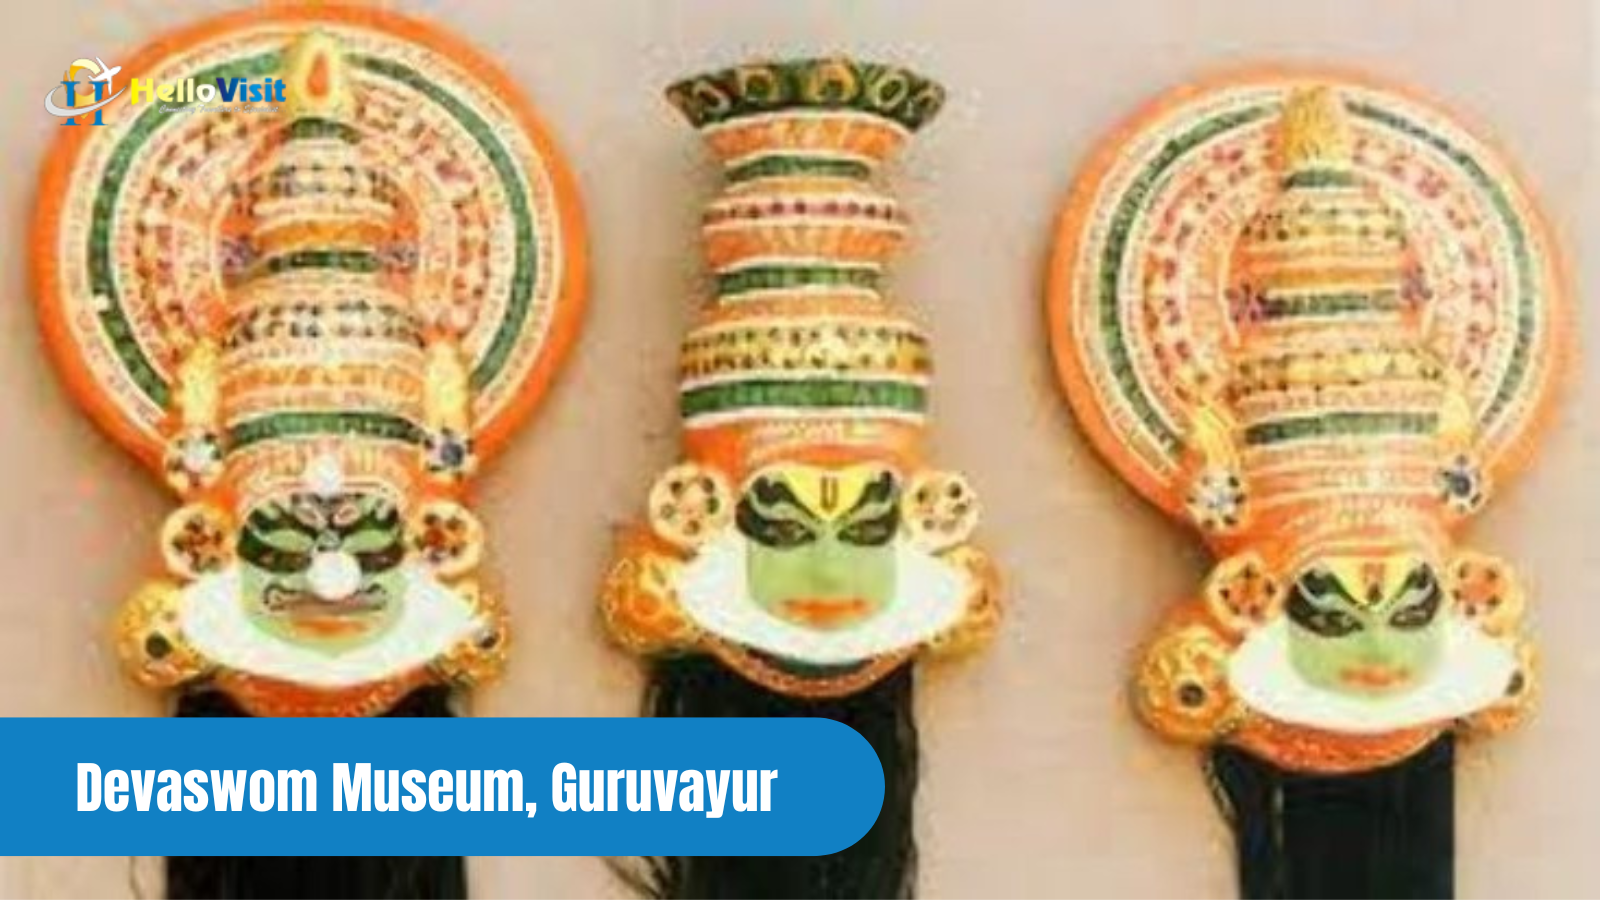 Devaswom Museum, Guruvayur